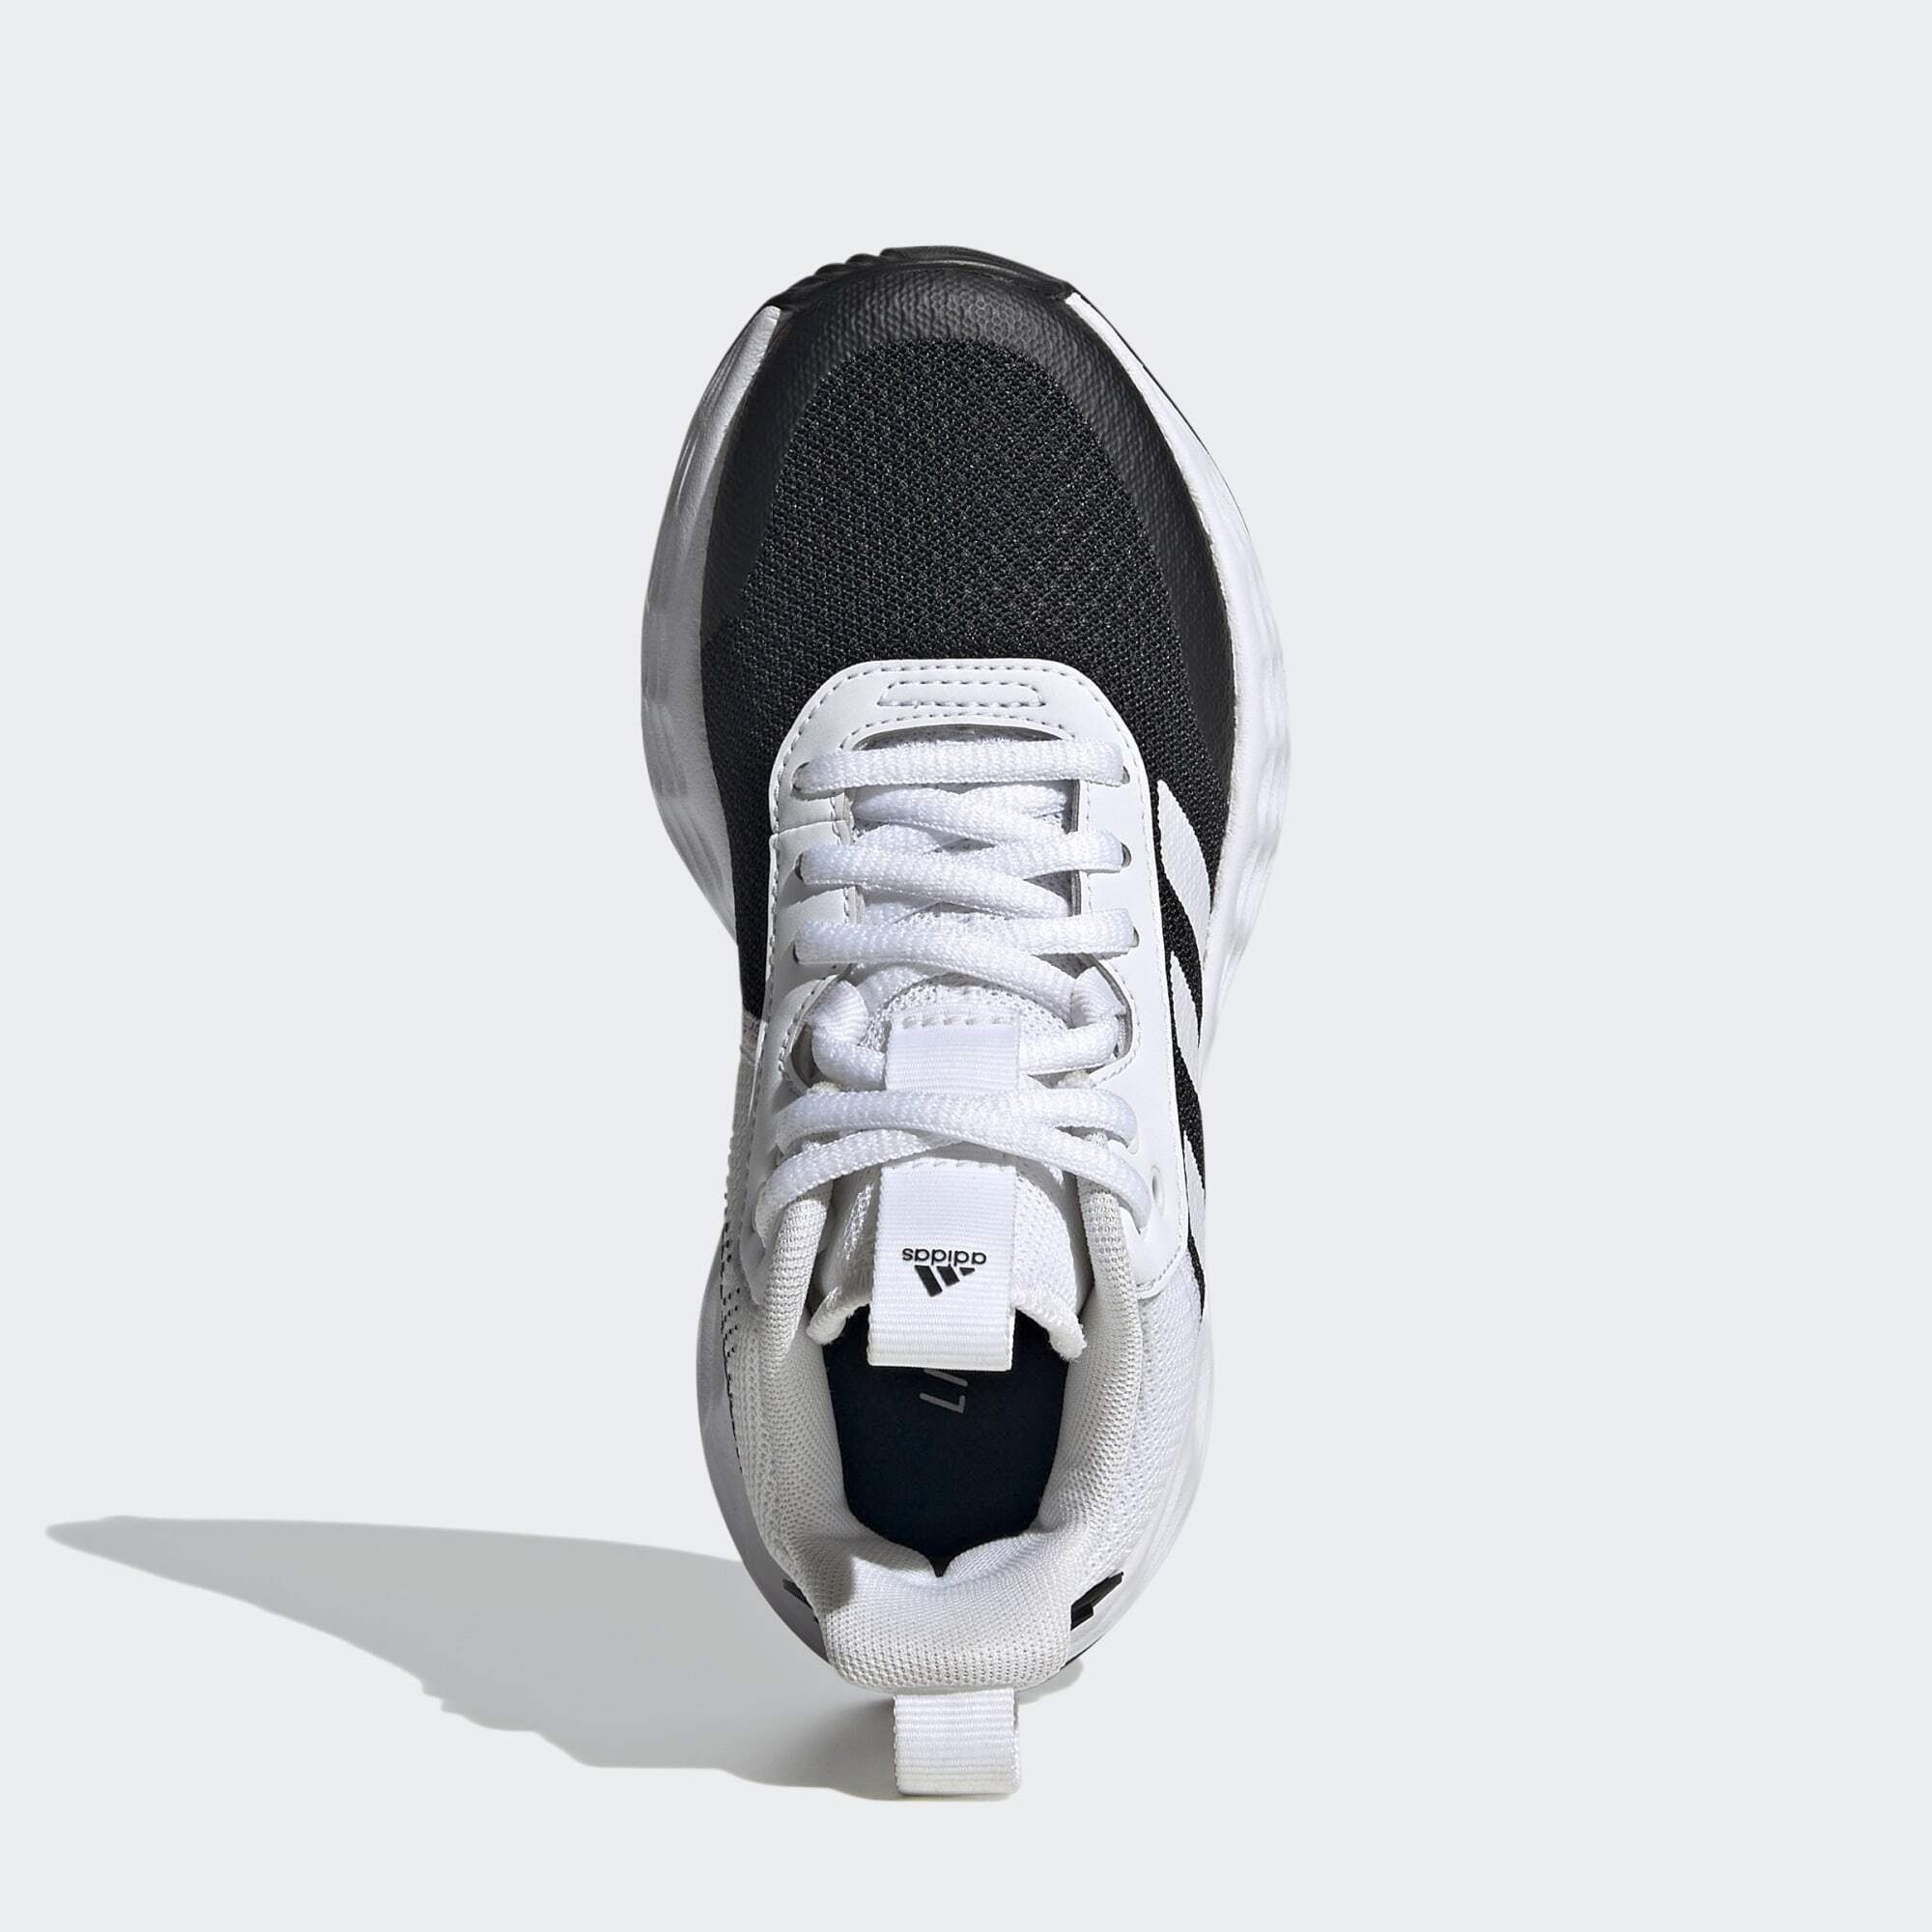 Black Basketballschuh White adidas 2.0 OWNTHEGAME / Performance / BASKETBALLSCHUH Core Core Cloud Black